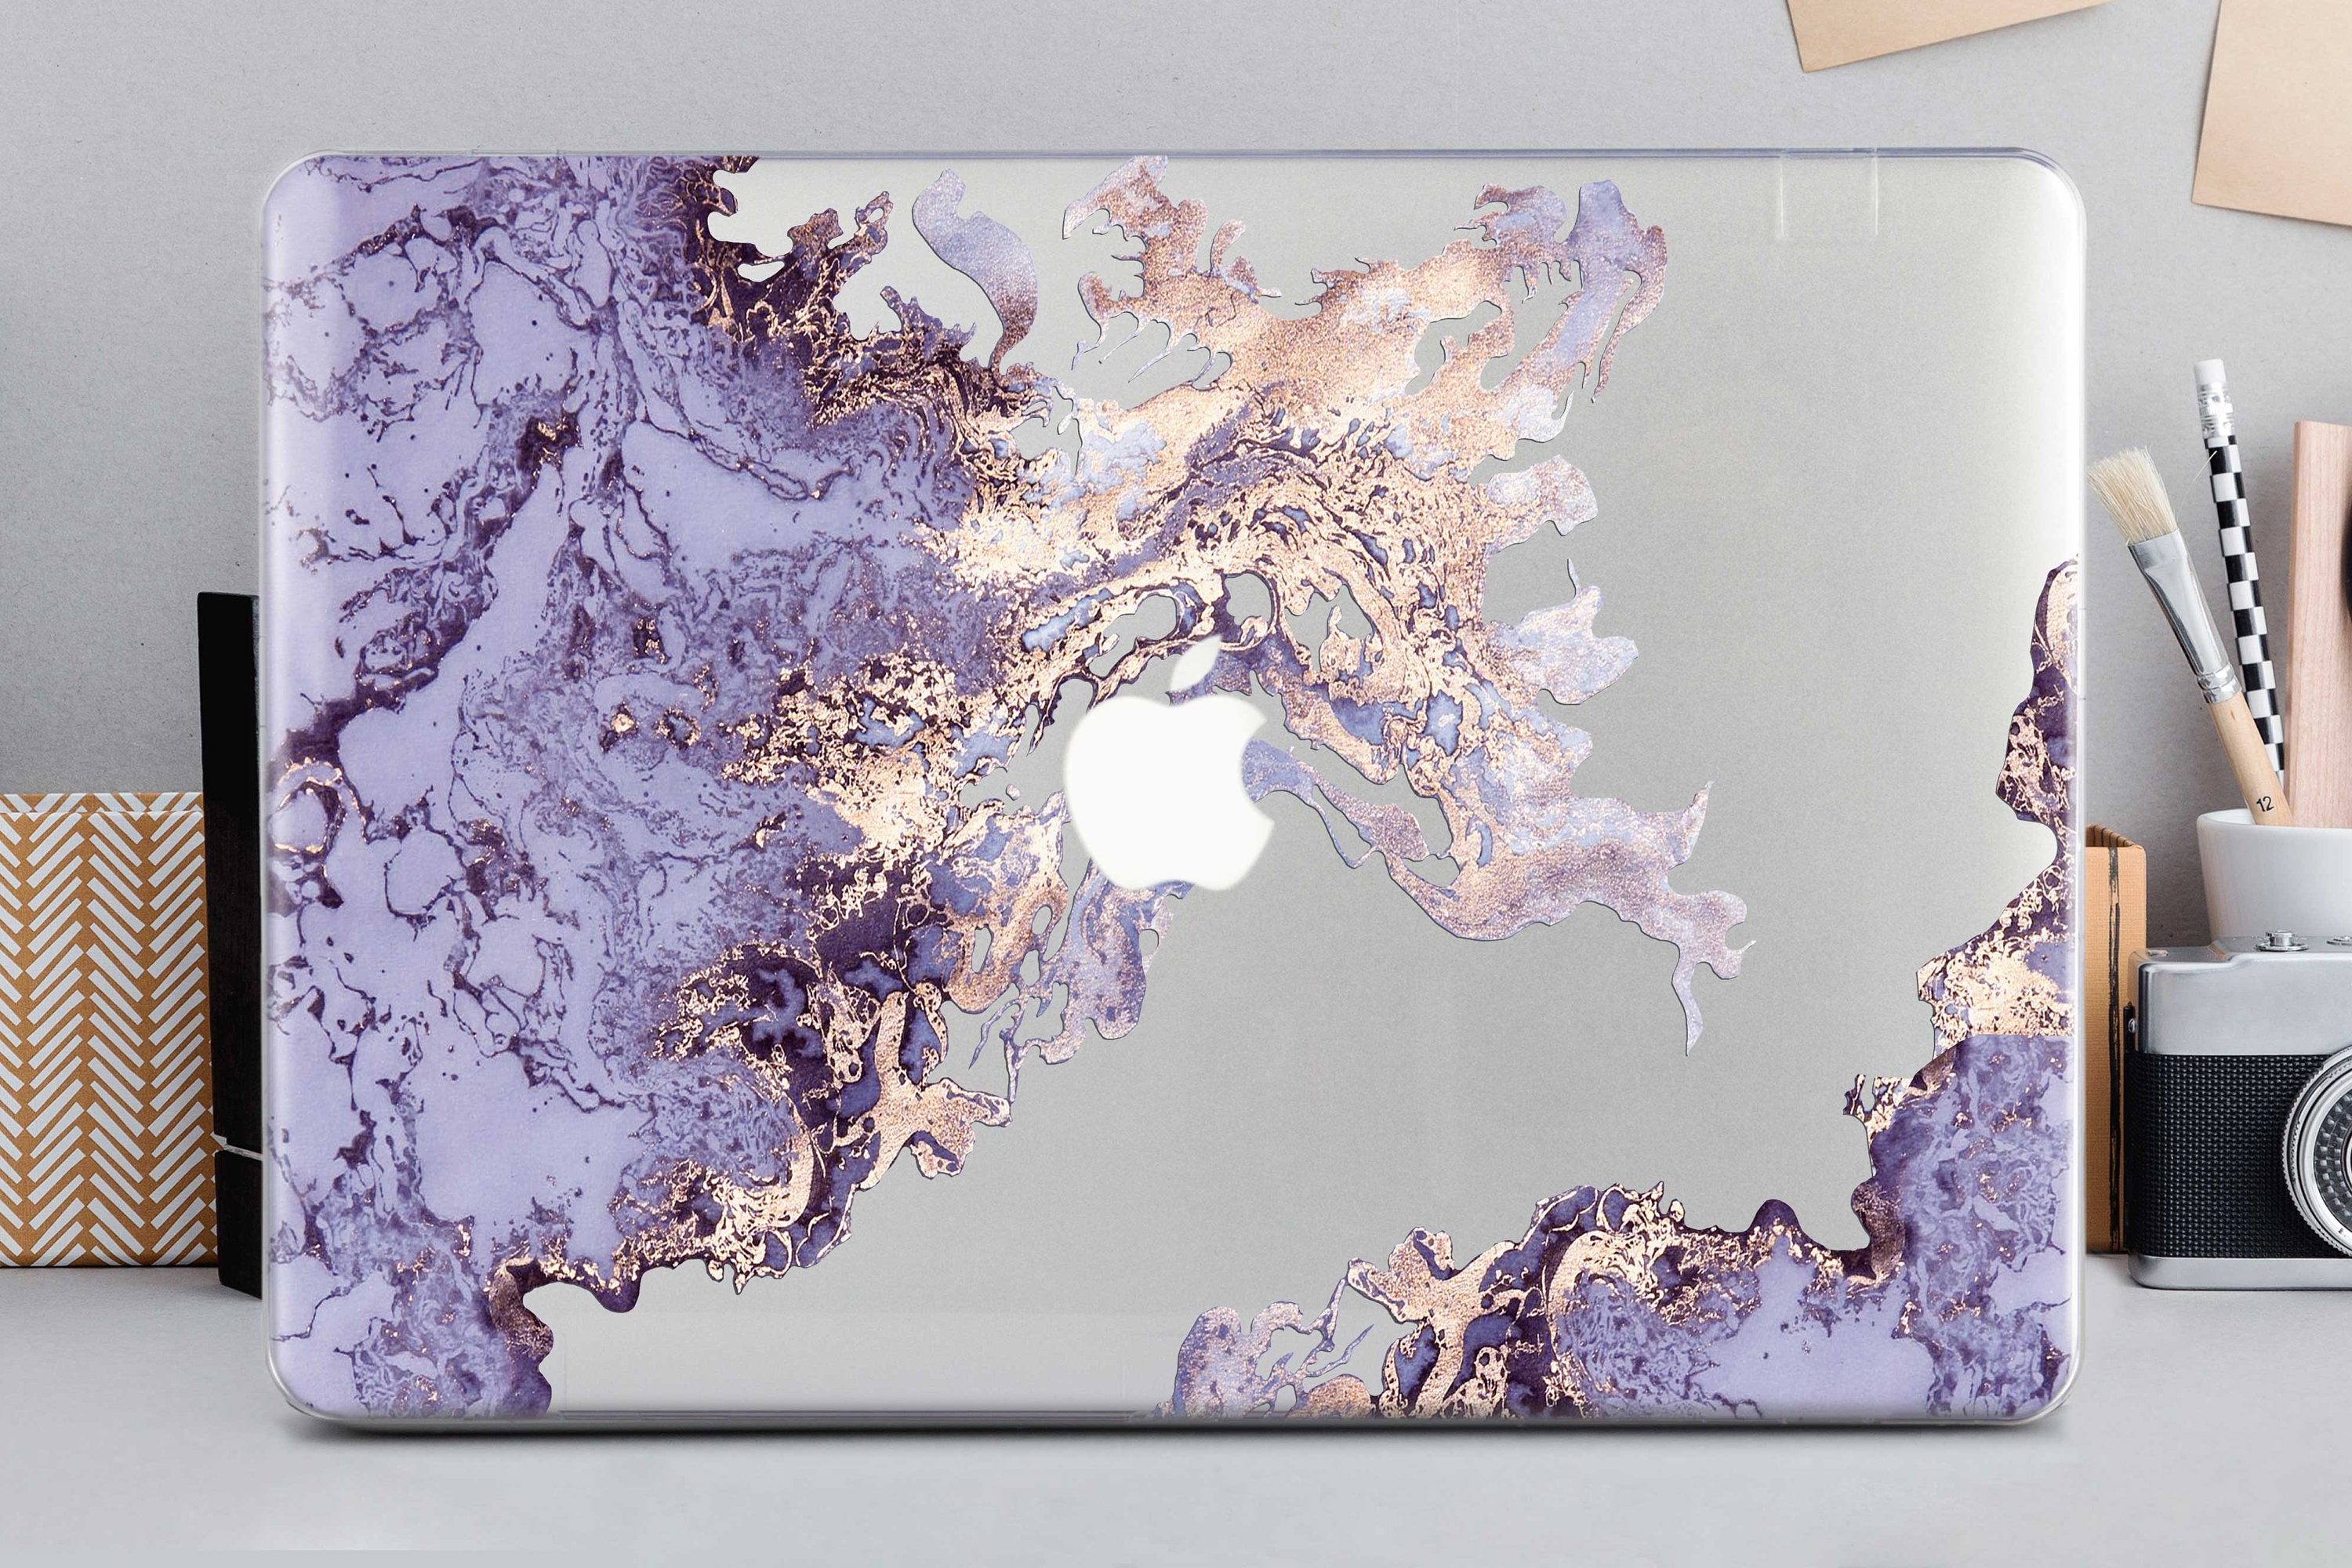 Golden Paints Macbook Pro 16 Case A2141 Macbook Air 13 Inch Case 2017 13 Inch Macbook Pro Cover Blue Marble Macbook Pro 15 Inch Case NK0407